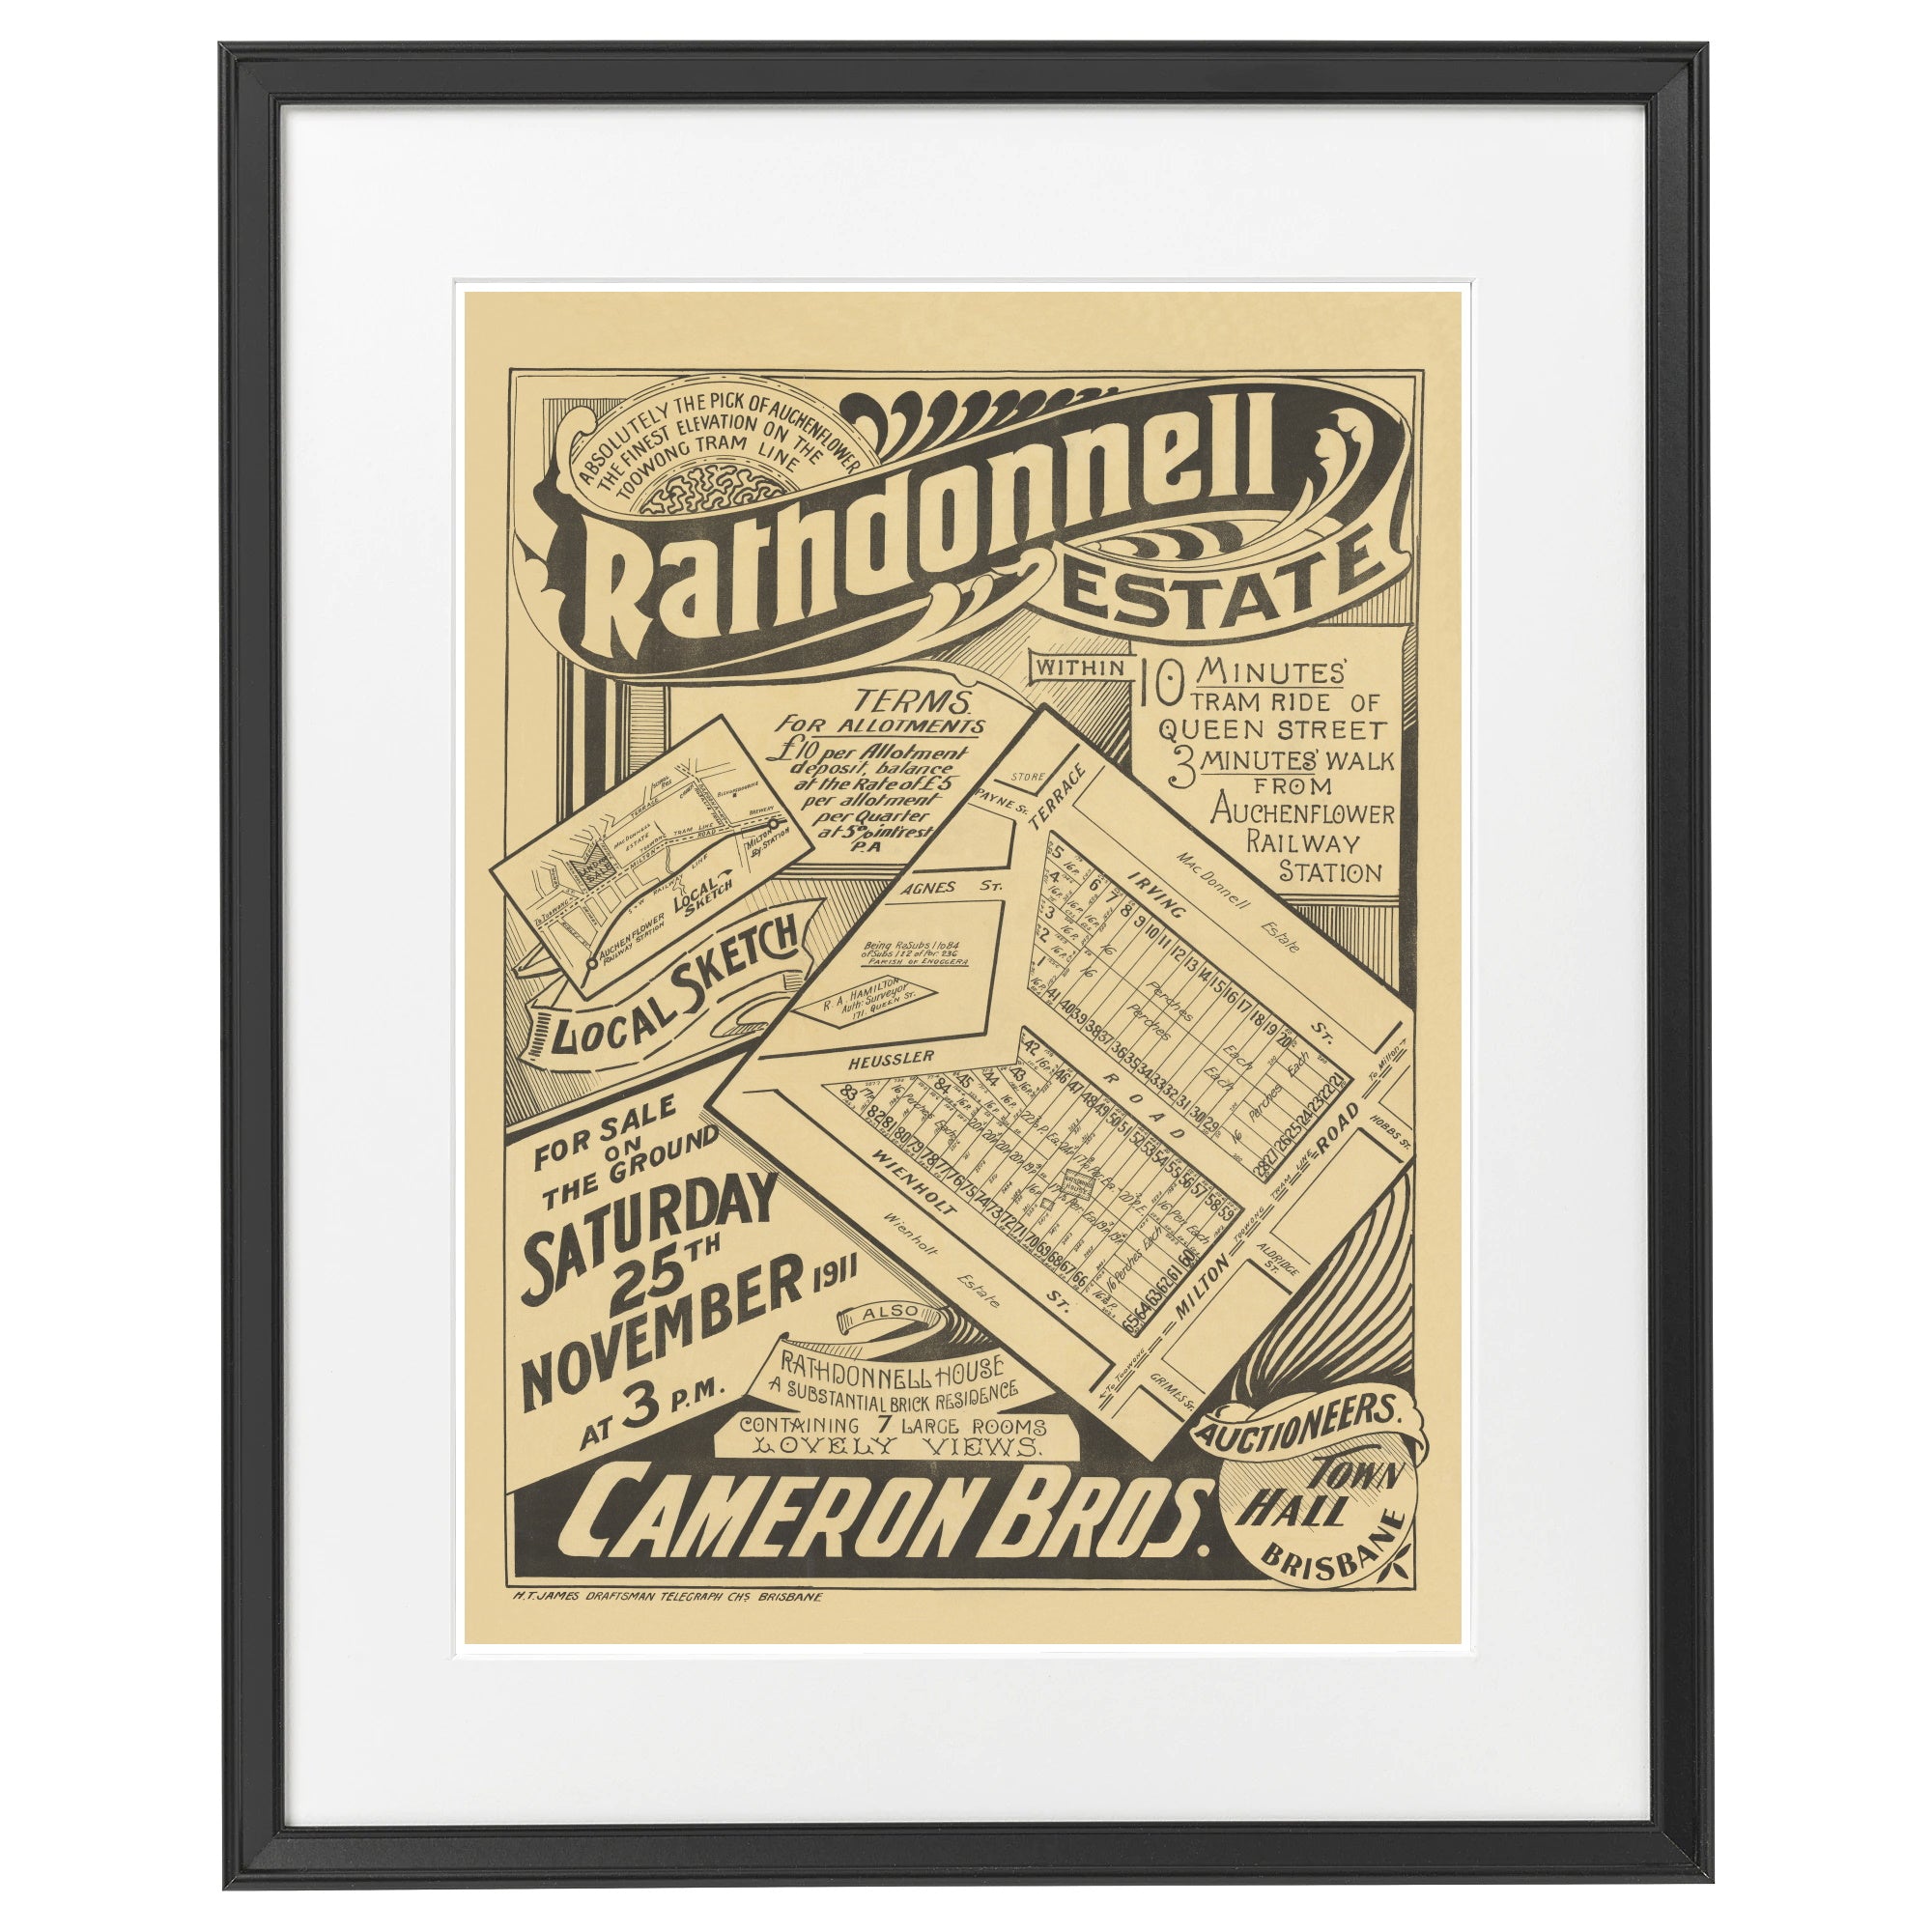 1911 Auchenflower - Rathdonnell Estate